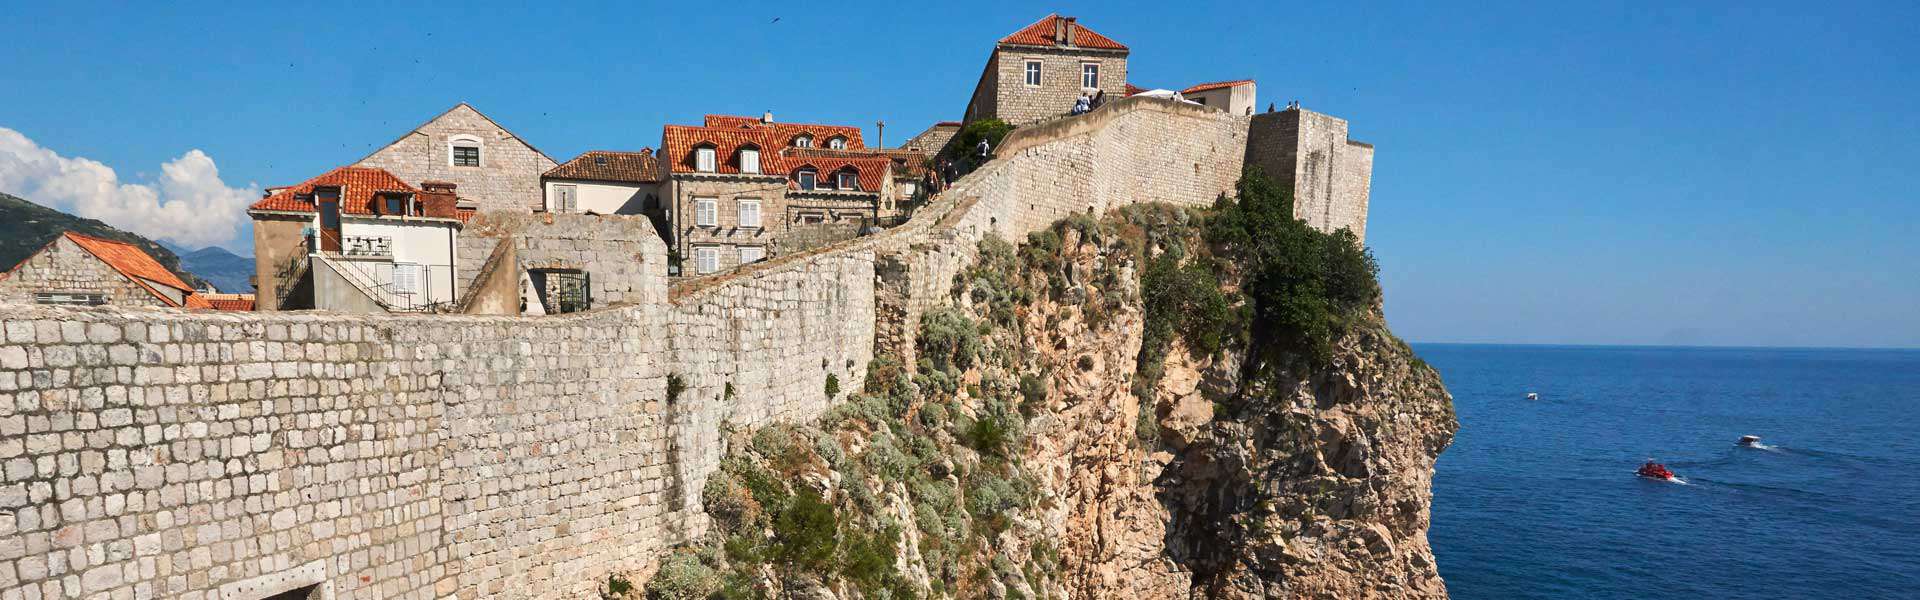 Bau am Ende des 8. Jahrhunderts – Steine, die Geschichten erzählen können: die Stadtmauer von Dubrovnik